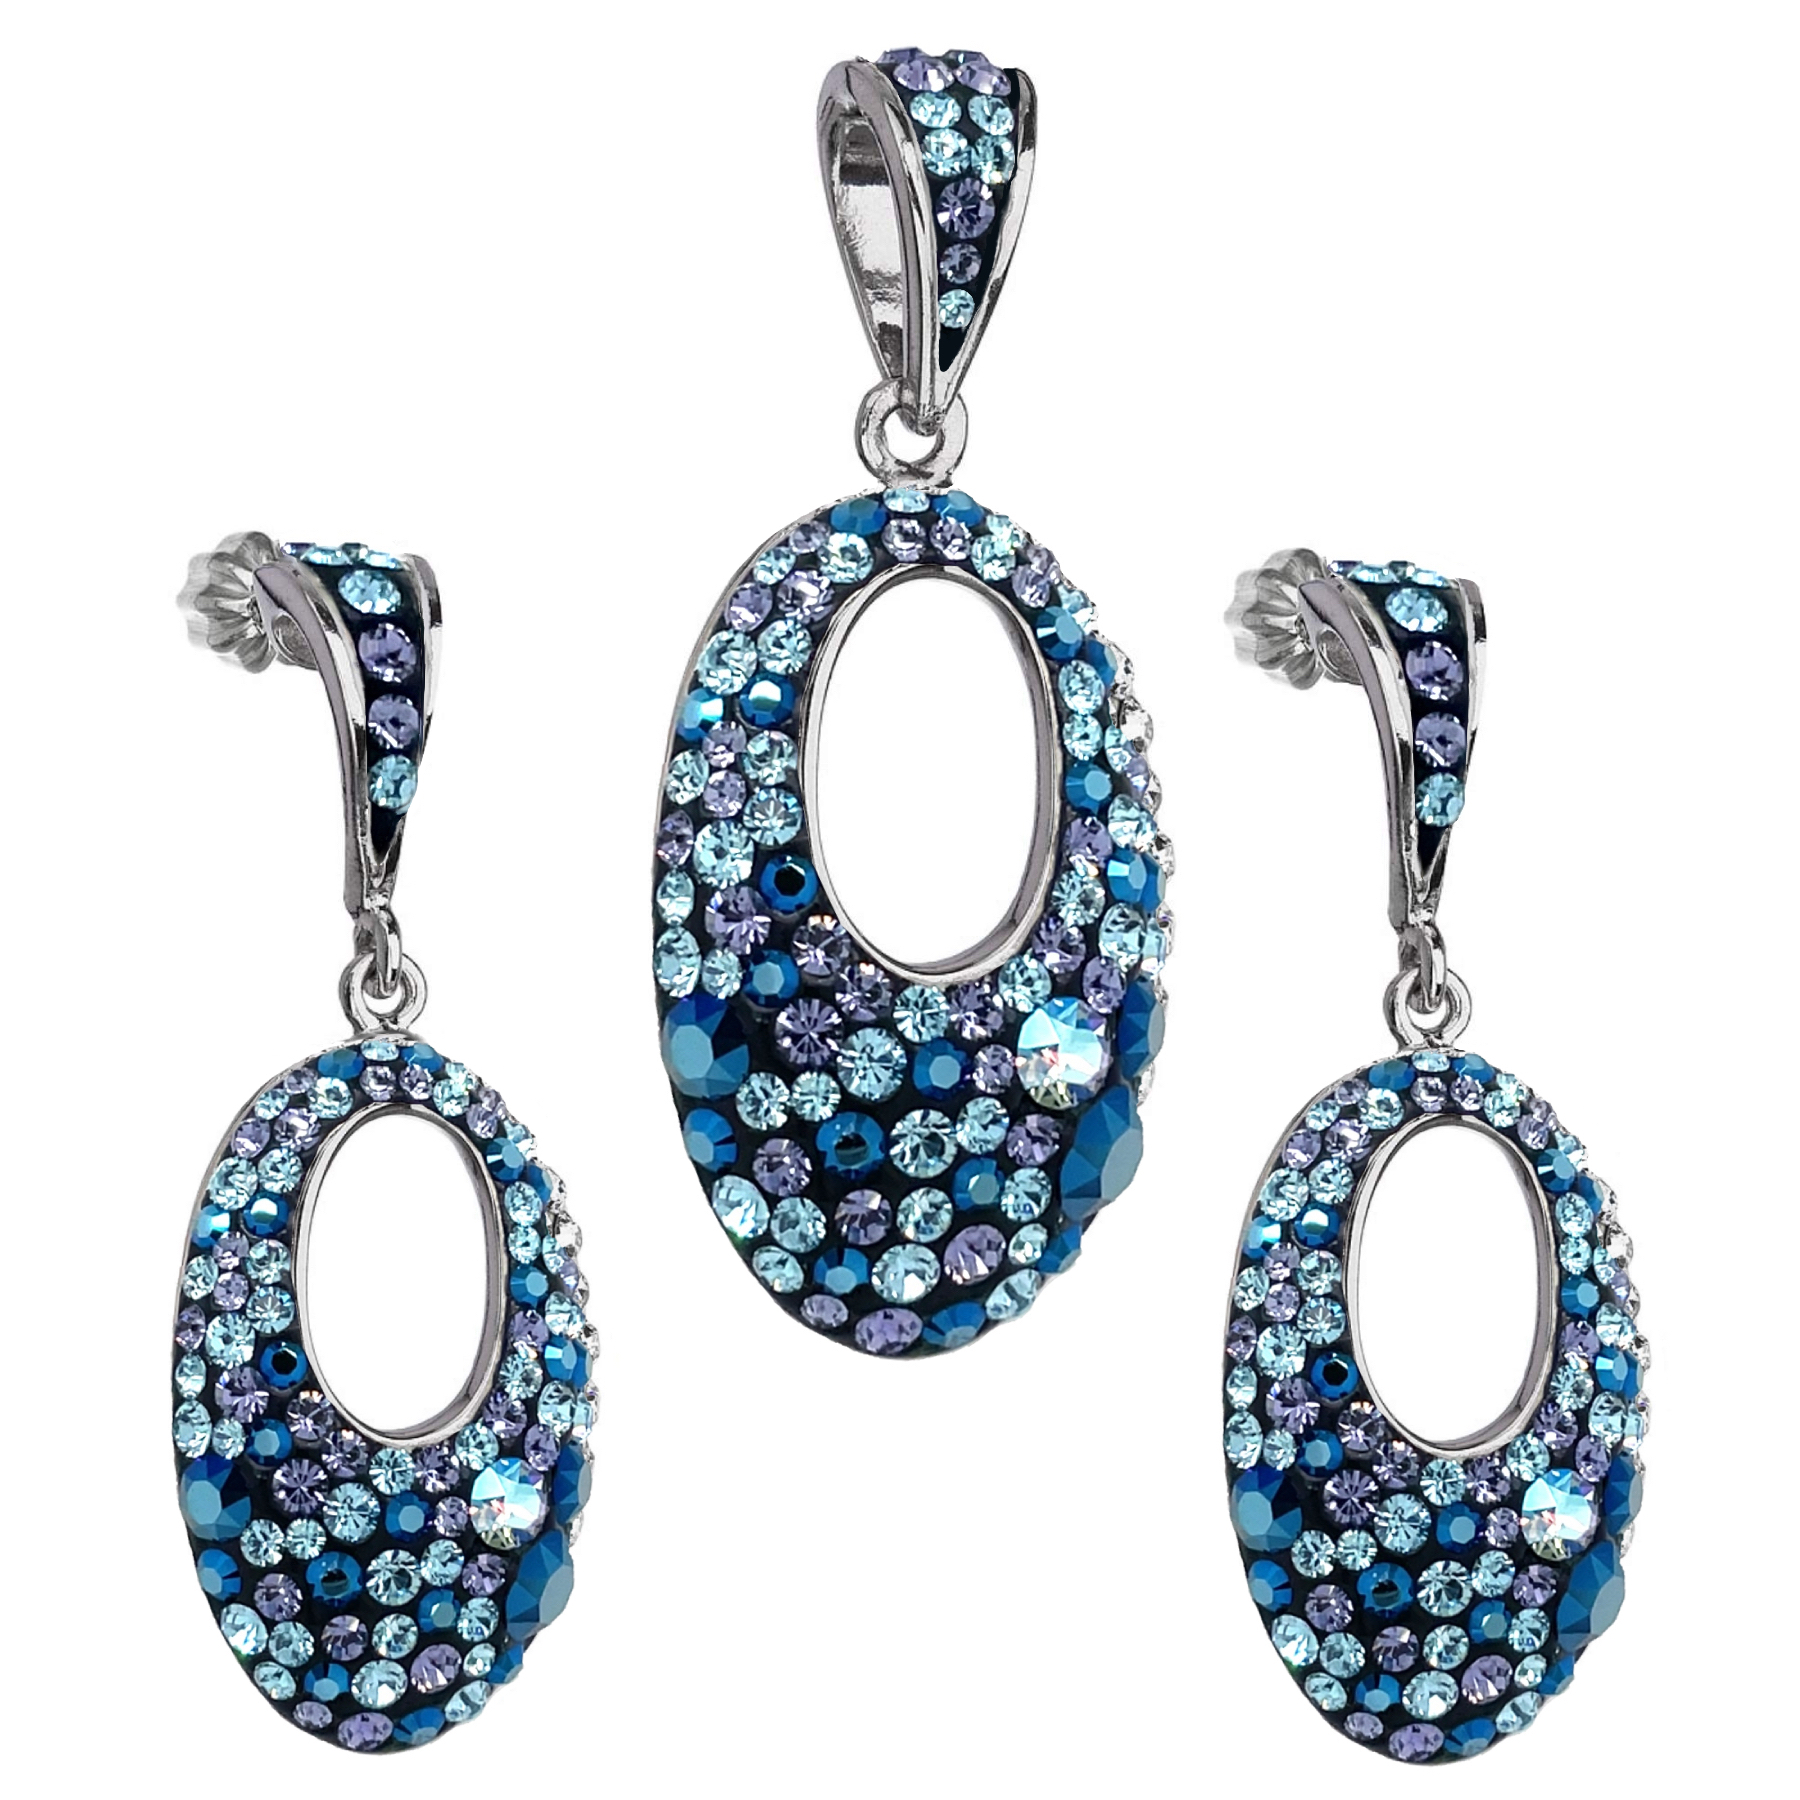 Evolution Group Sada šperků s krystaly Swarovski náušnice a přívěsek modrý ovál 39075.3 blue style